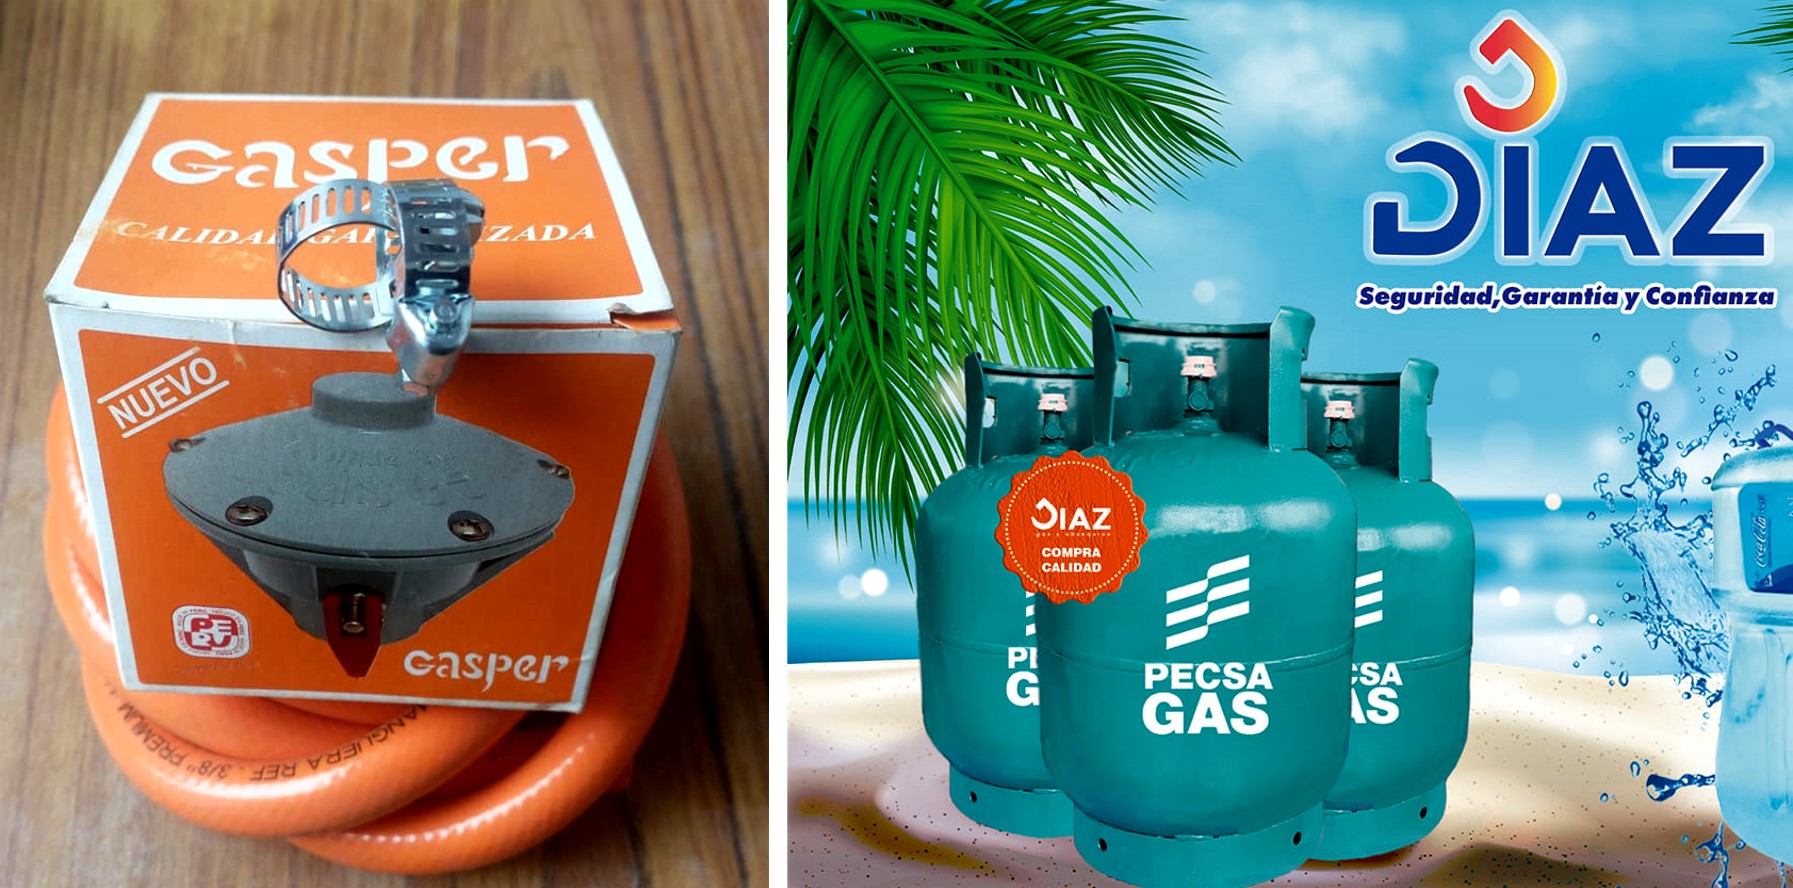 GAS COMAS | Venta GAS Licuado de Petróleo | Delivery GRATIS